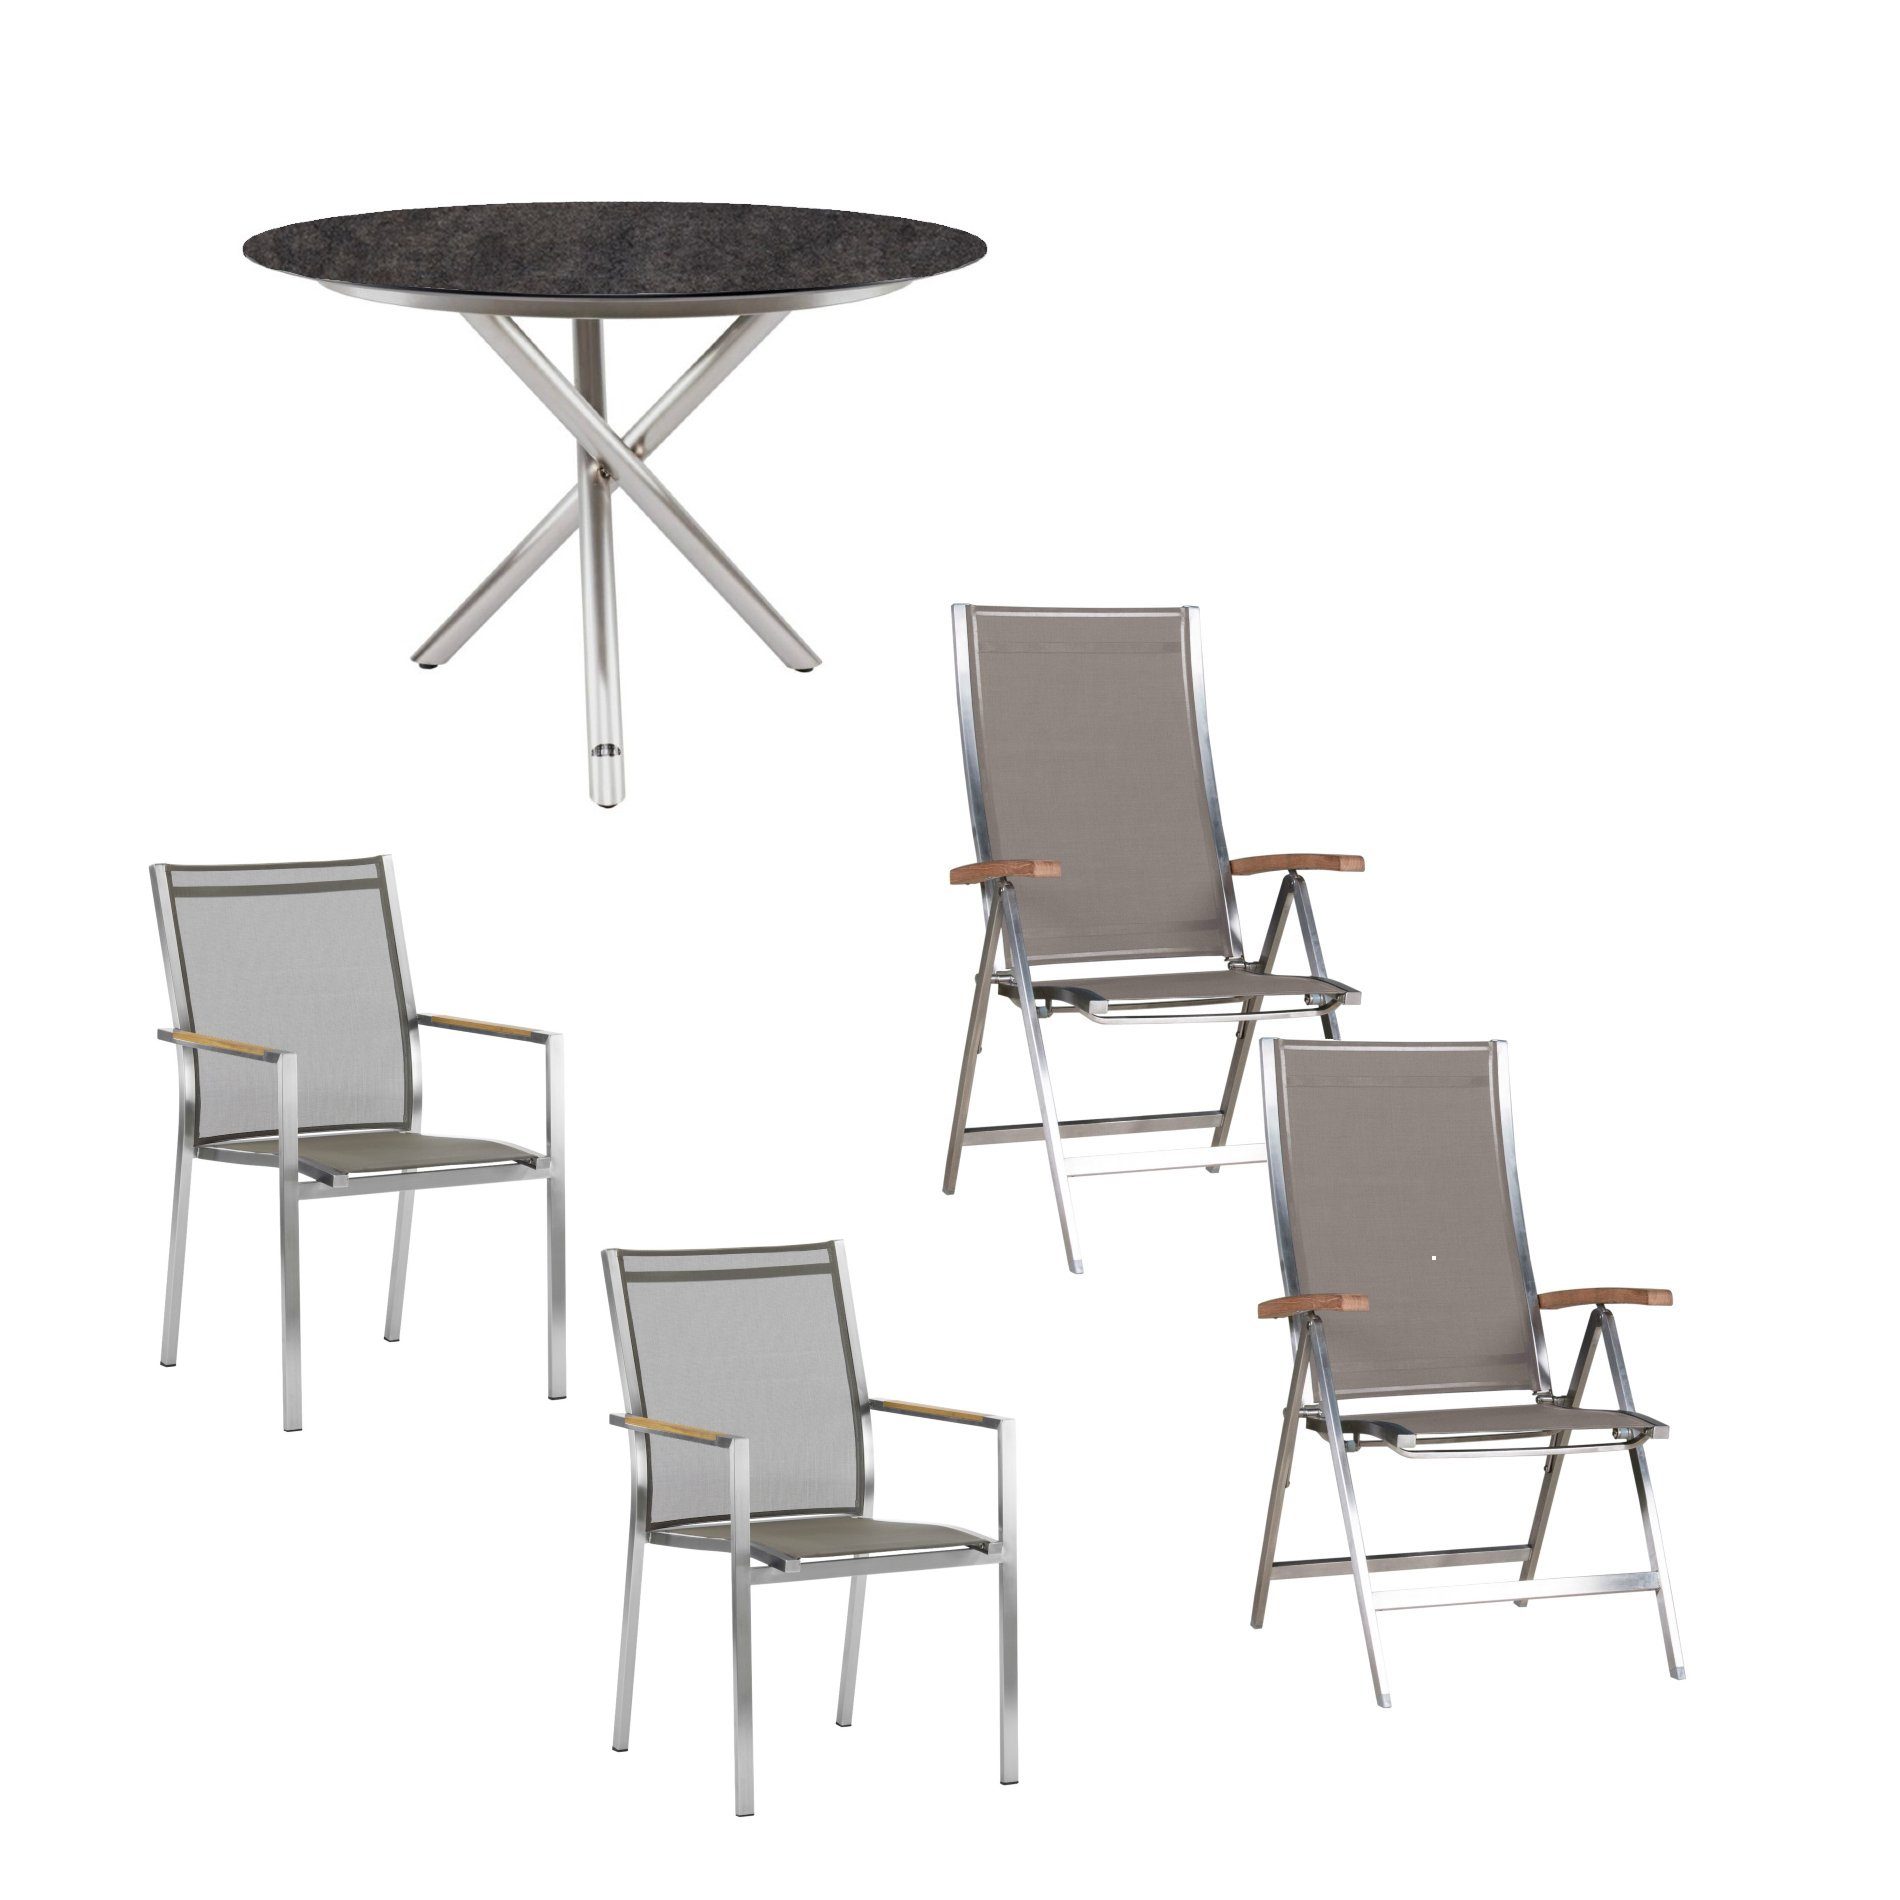 Zebra Gartenmöbel-Set mit Stuhl "One" und Tisch "Mikado", Edelstahl/HPL, Textilen Taupe